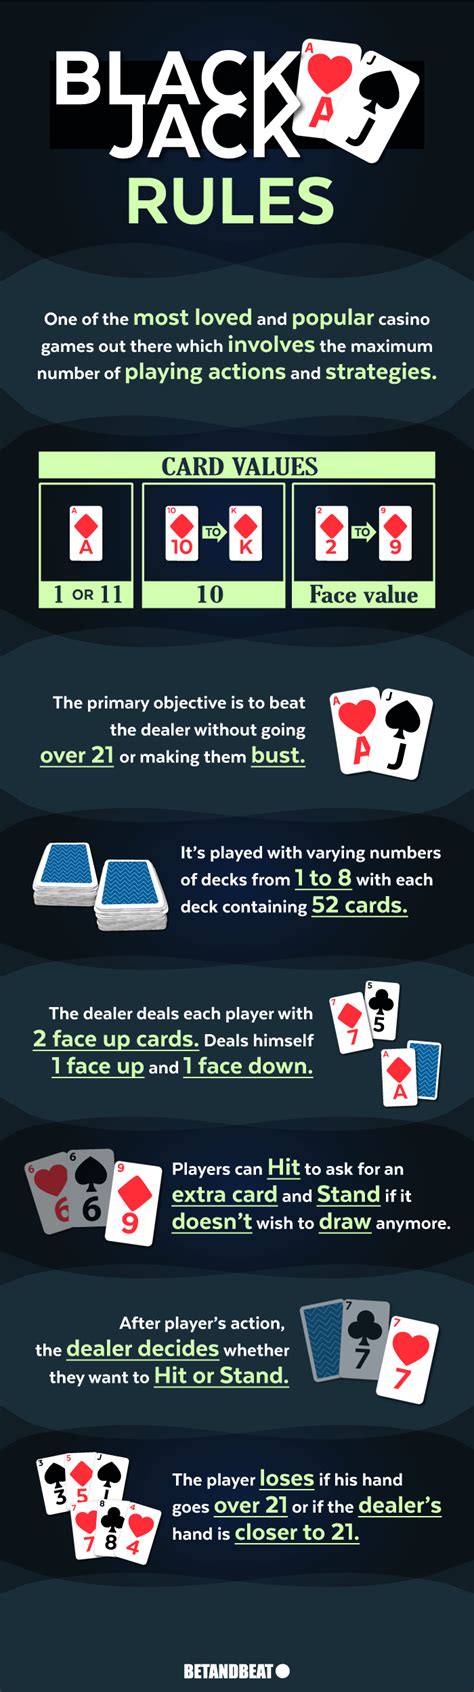 blackjack rules deck of cards/